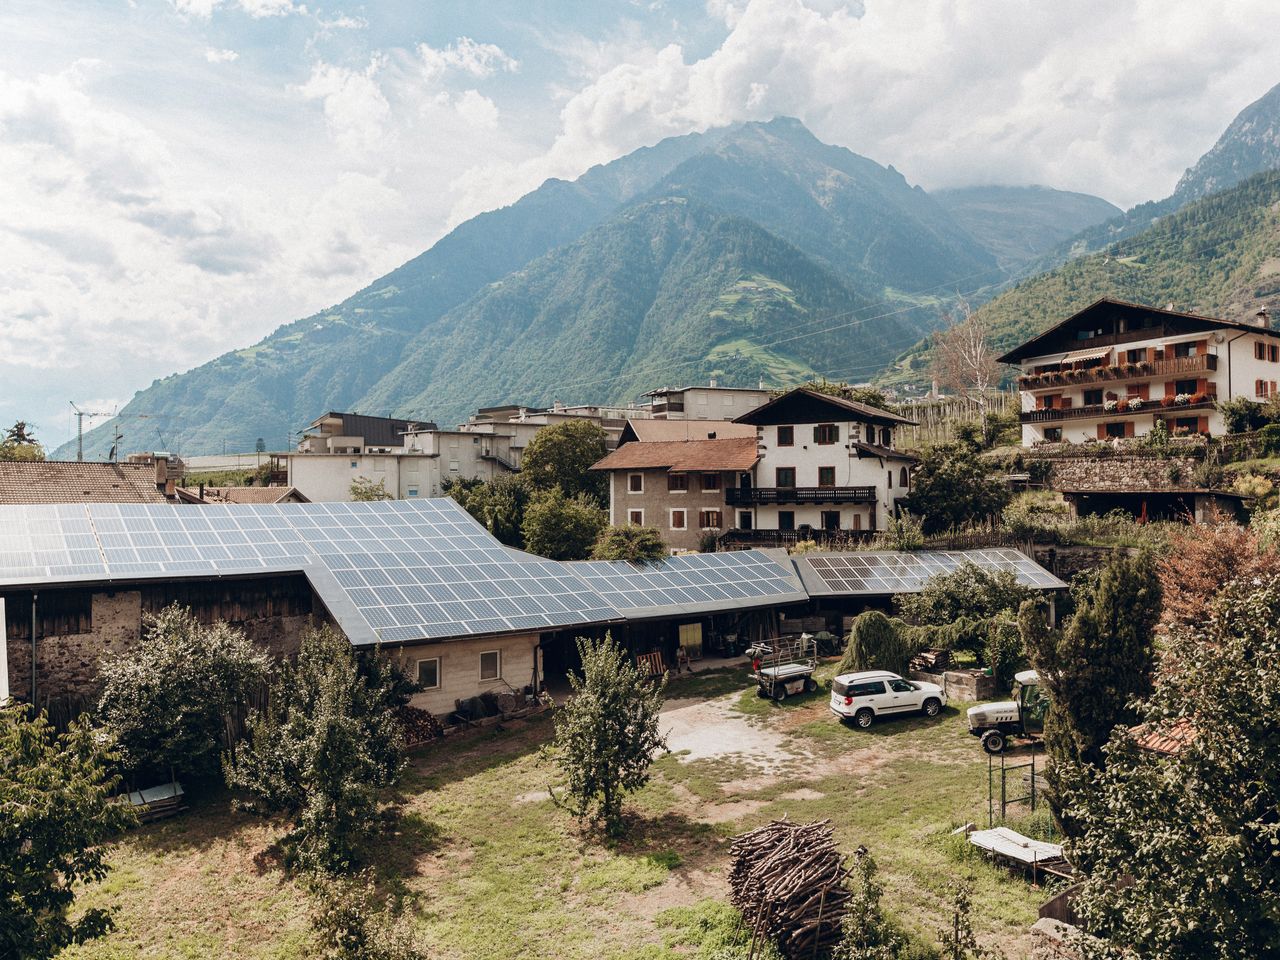 6 Tage Schlemmen & Chillen:Südtirol mit Massage & SPA